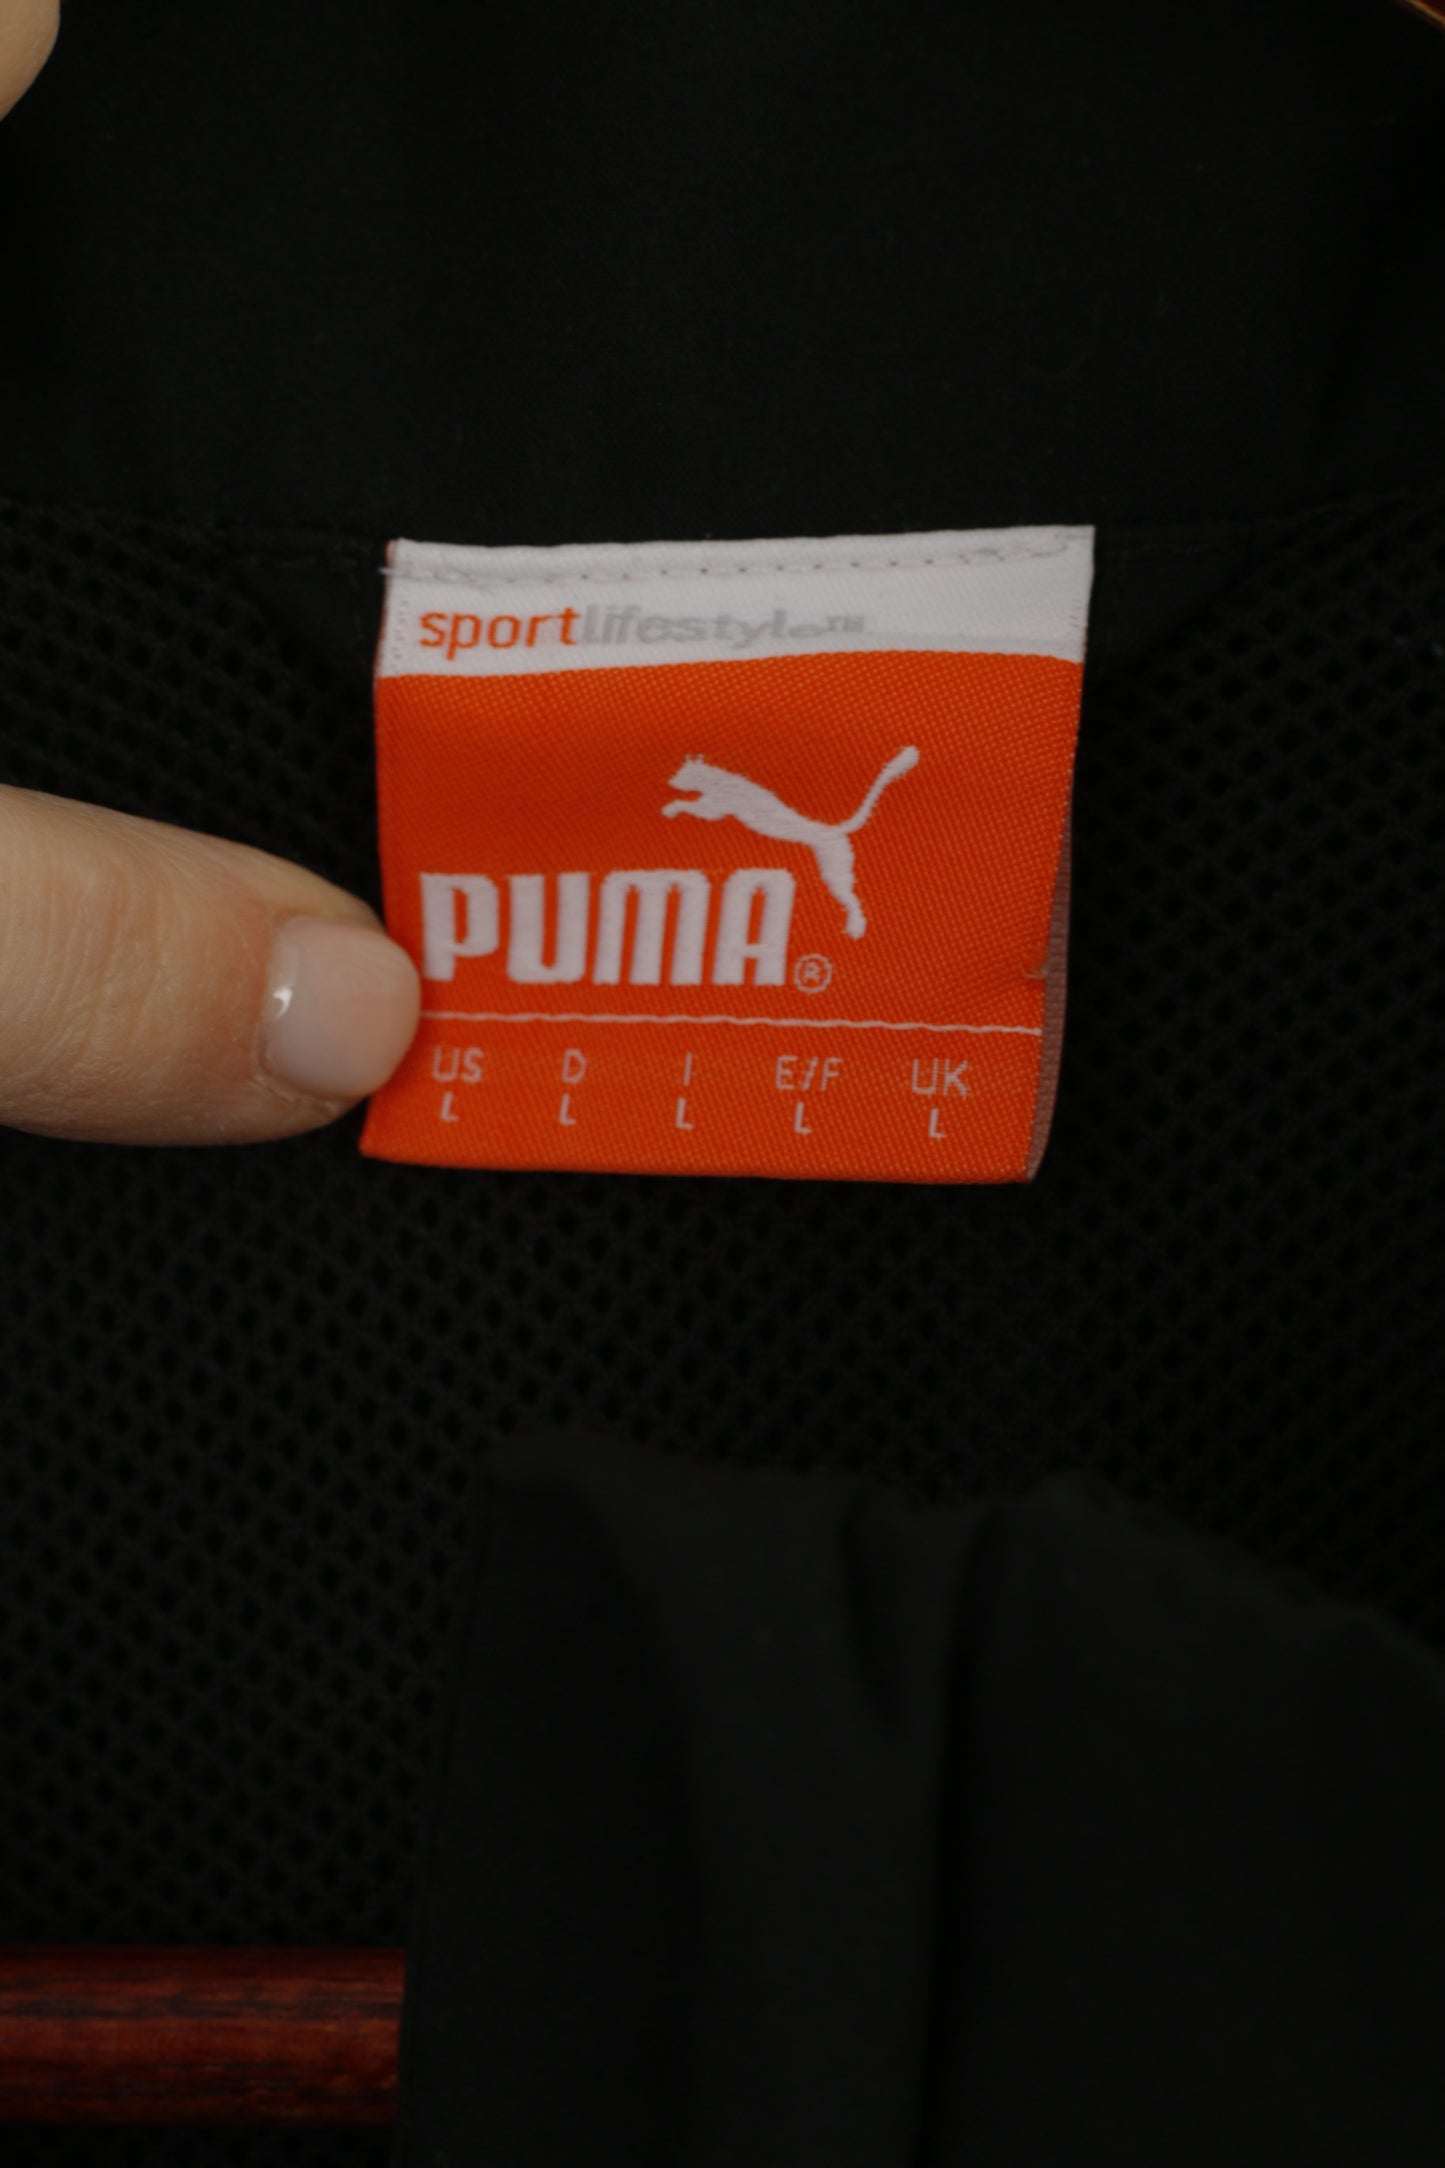 Giacca Puma Uomo L Nero Bianco Activewear Cerniera intera Sport Lifestyle Top foderato in rete